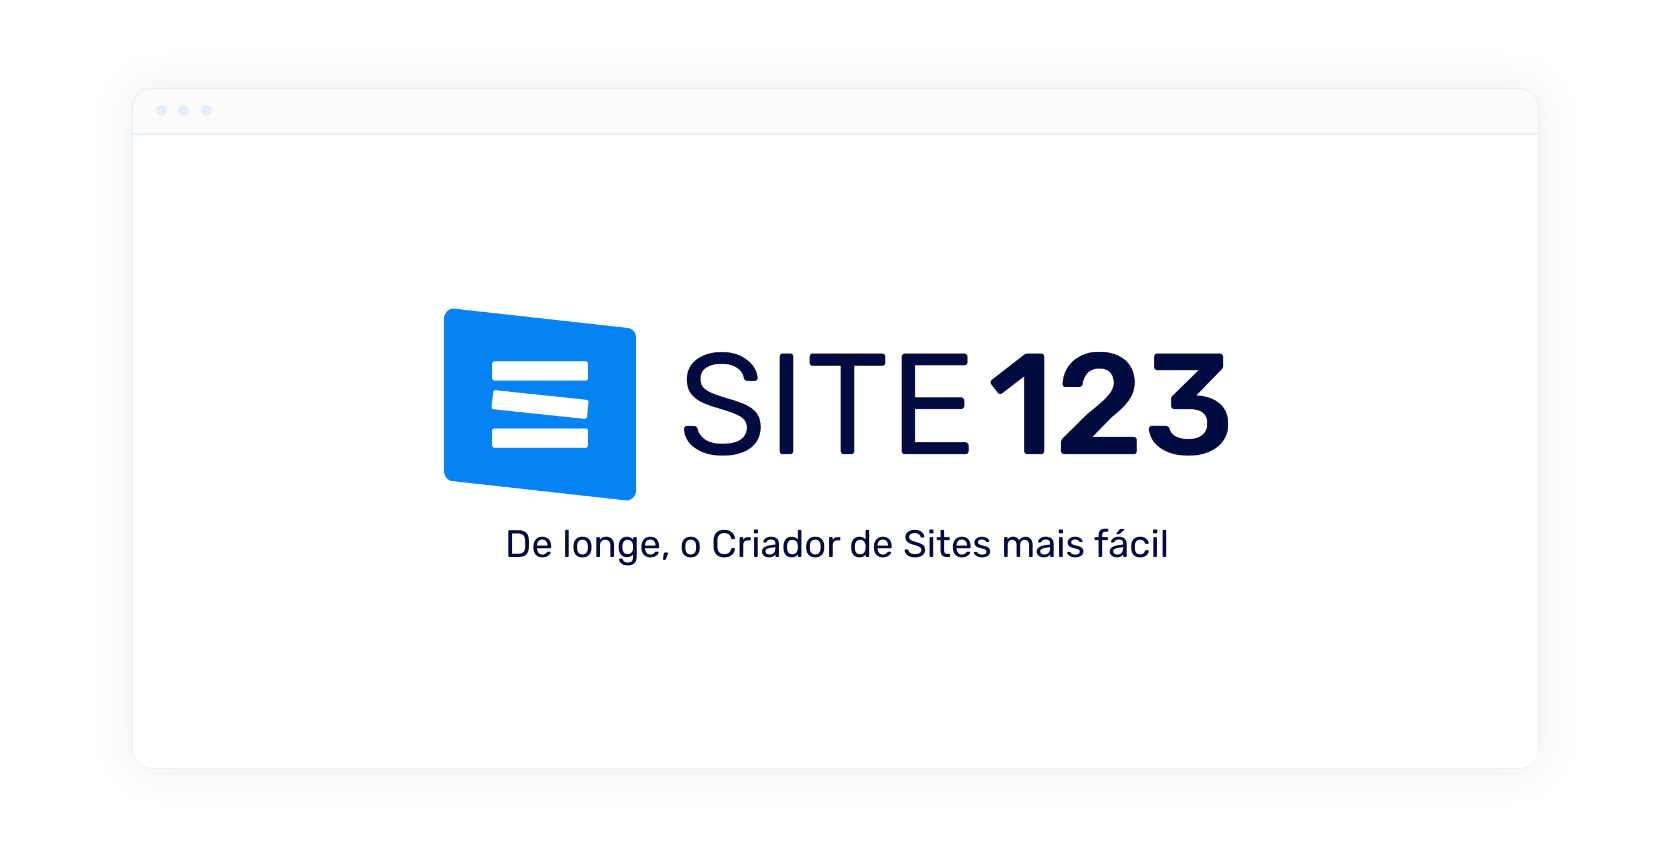 Avaliação SITE123: Criação de Sites Fácil e Rápida com Ferramentas Intuitivas - Appvizer